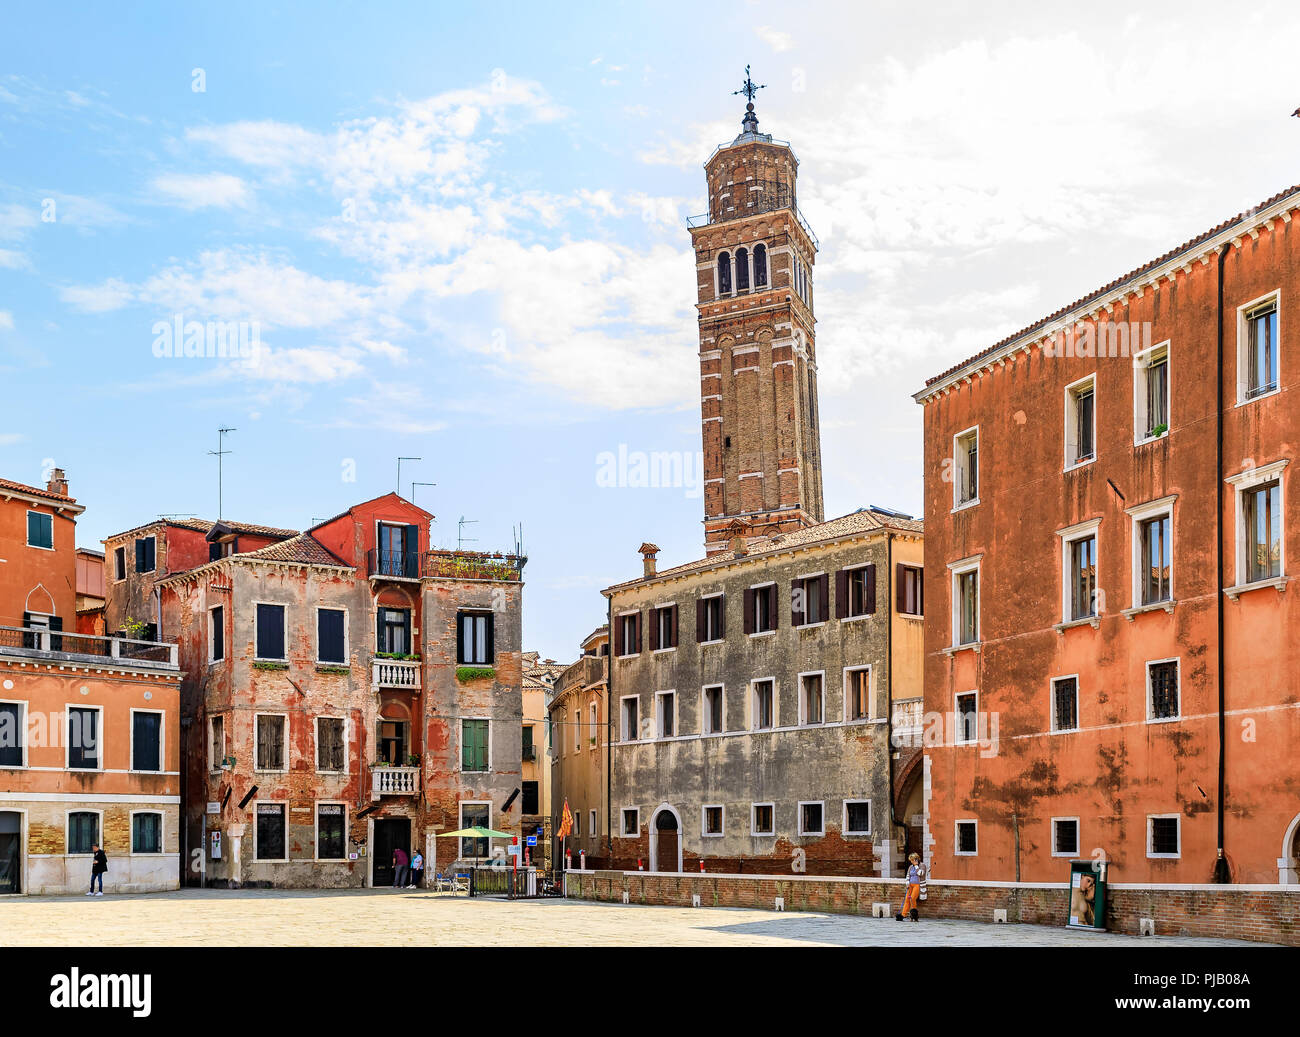 Venise, Italie - 23 septembre 2017 : Façades de bâtiments anciens typiques dans un vieux carré avec une tour-clocher de l'église Chiesa di Santo Stefano Banque D'Images